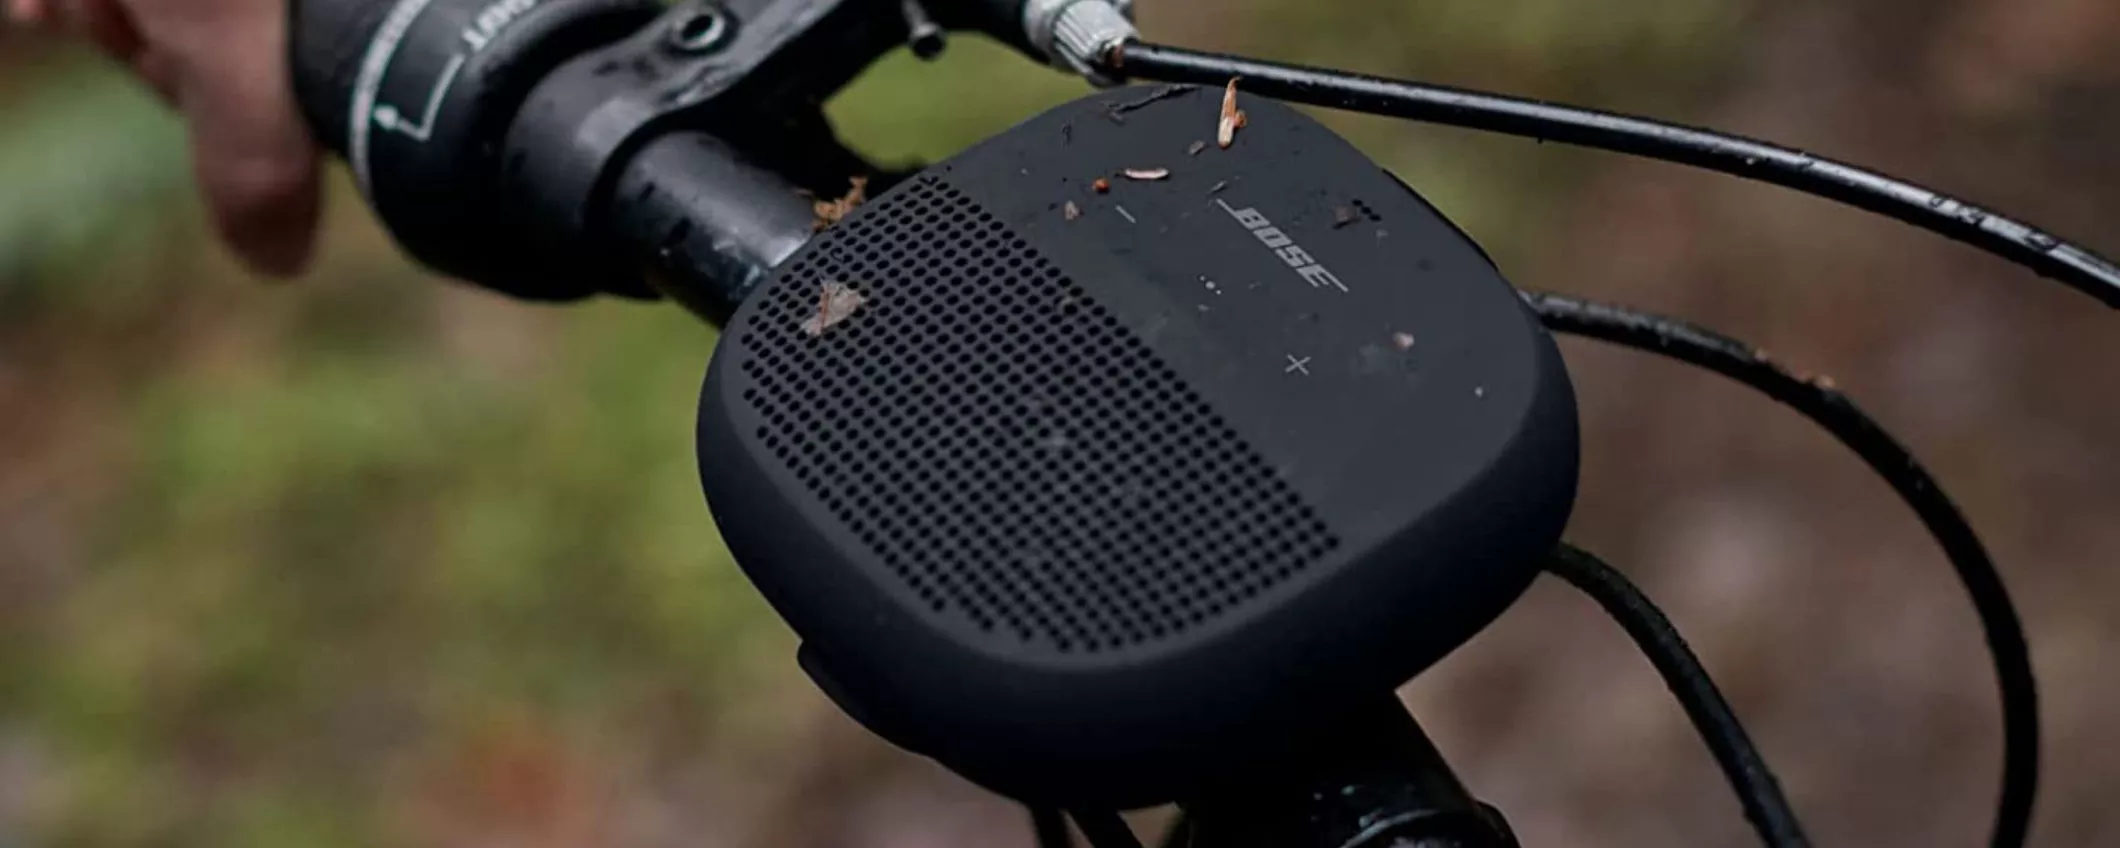 Altoparlante portatile e impermeabile Bose SoundLink Micro in promo su Amazon